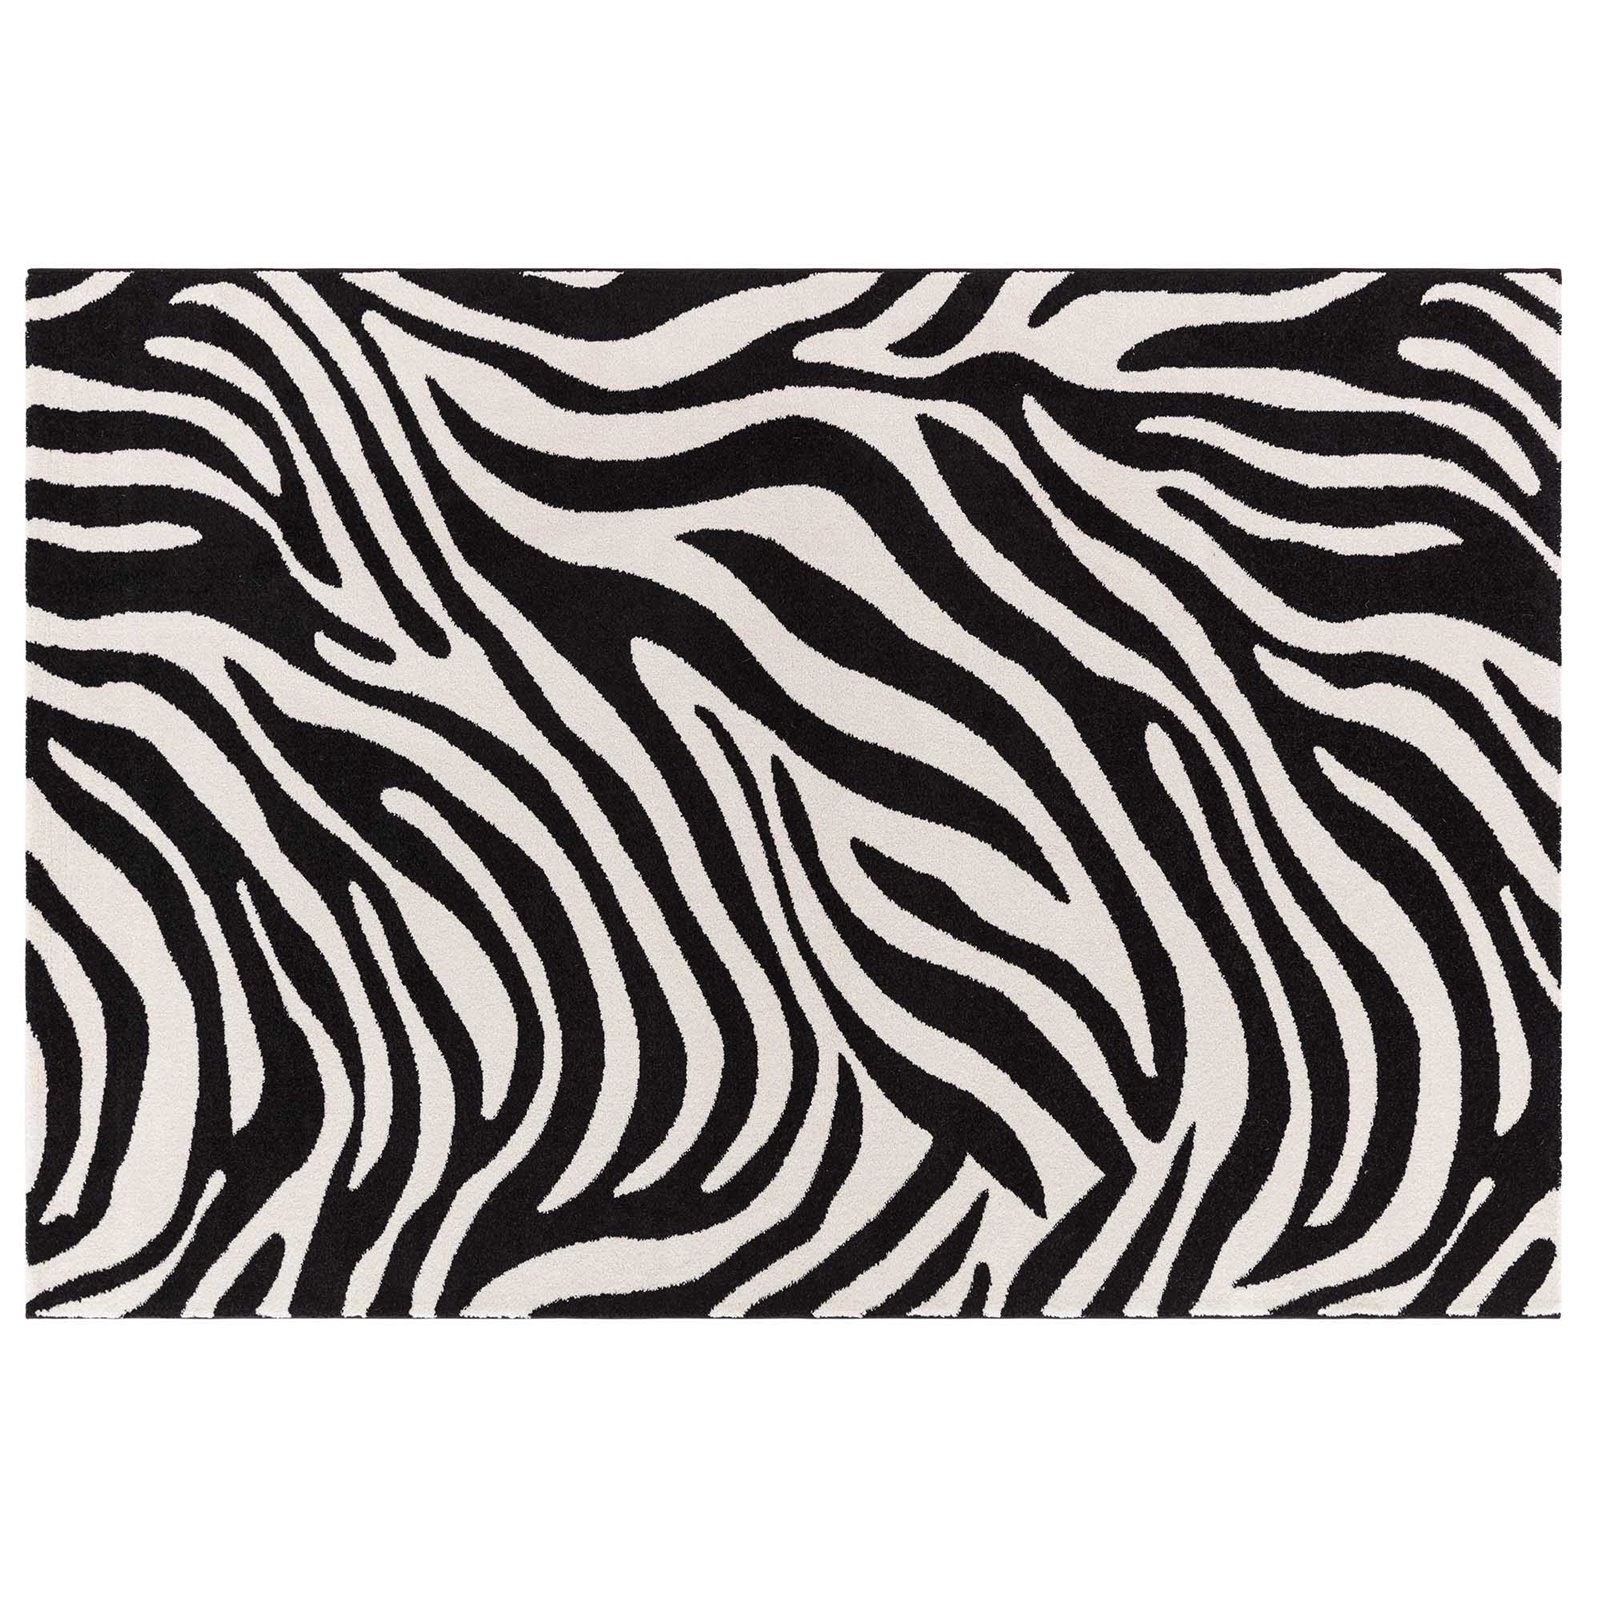 Tappeto arredo Zebra